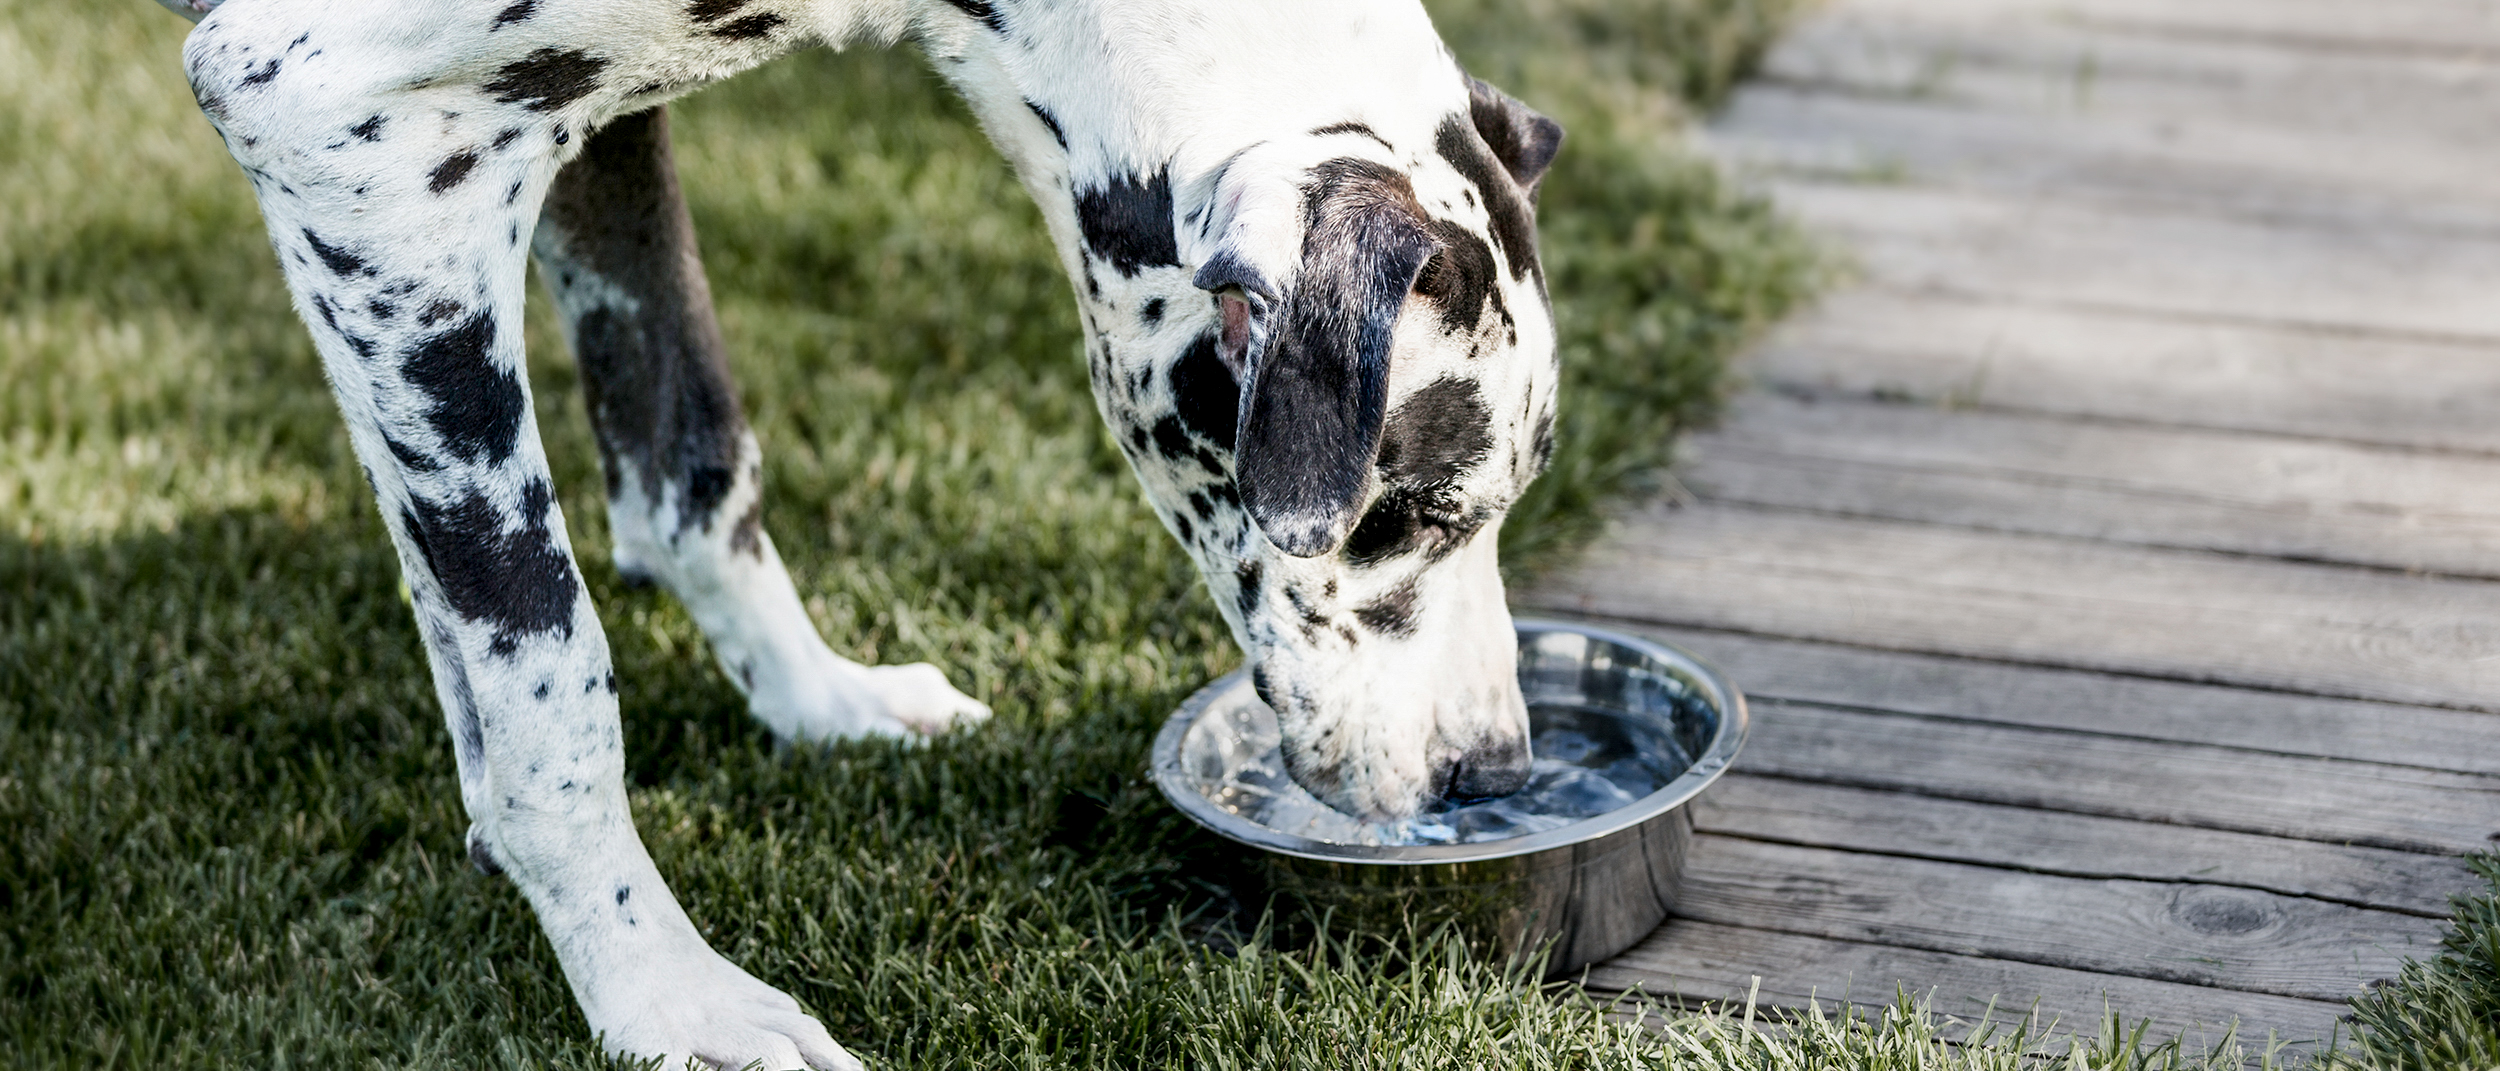 Volwassen Duitse Dog die in een tuin staat en drinkt uit een zilveren kom.